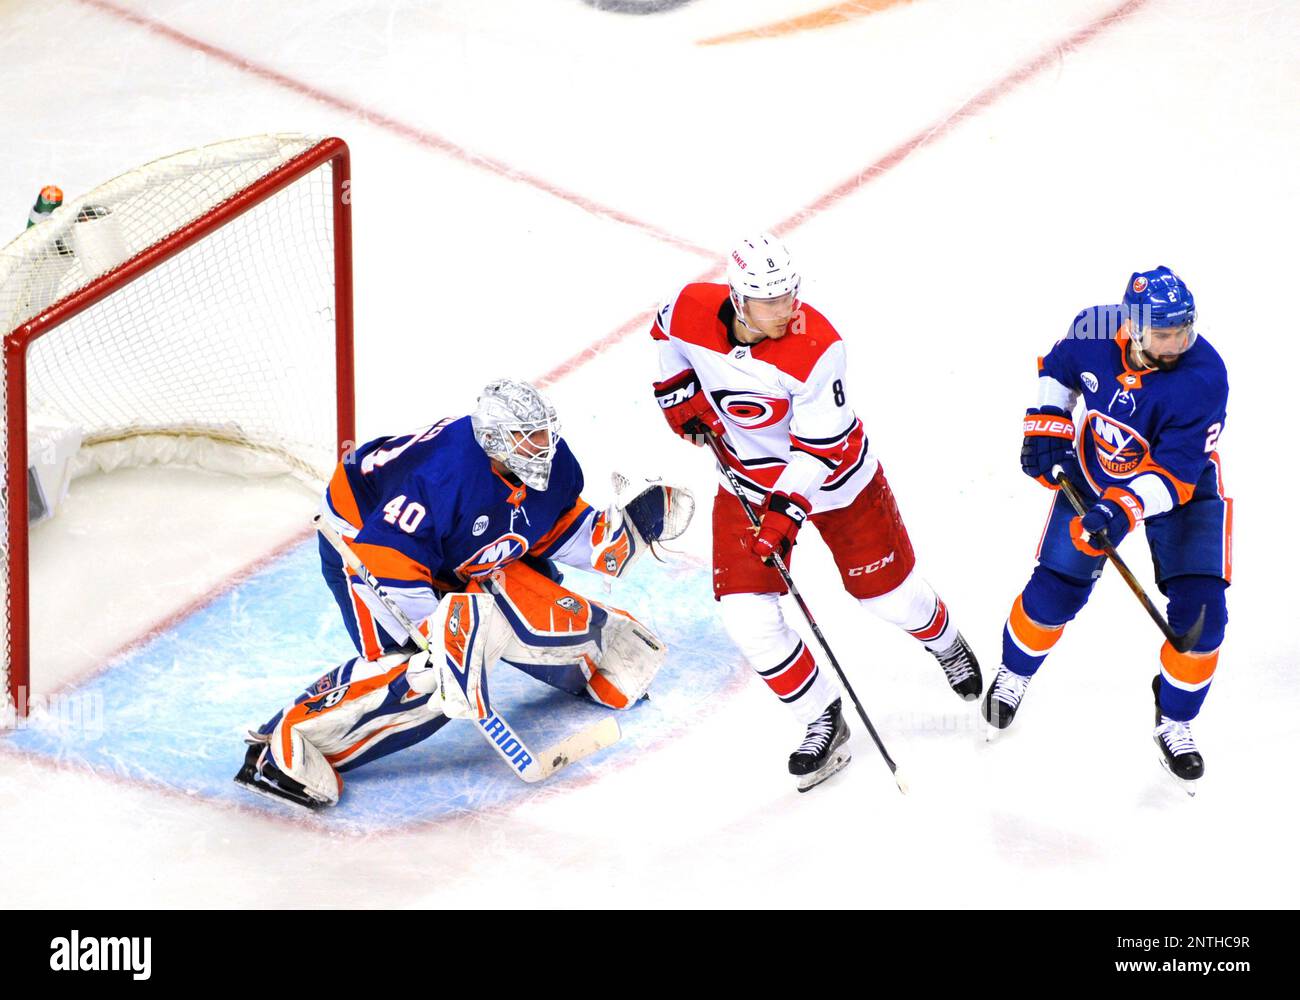 New York Islanders goalie Robin Lehner (40) looks on prior to an